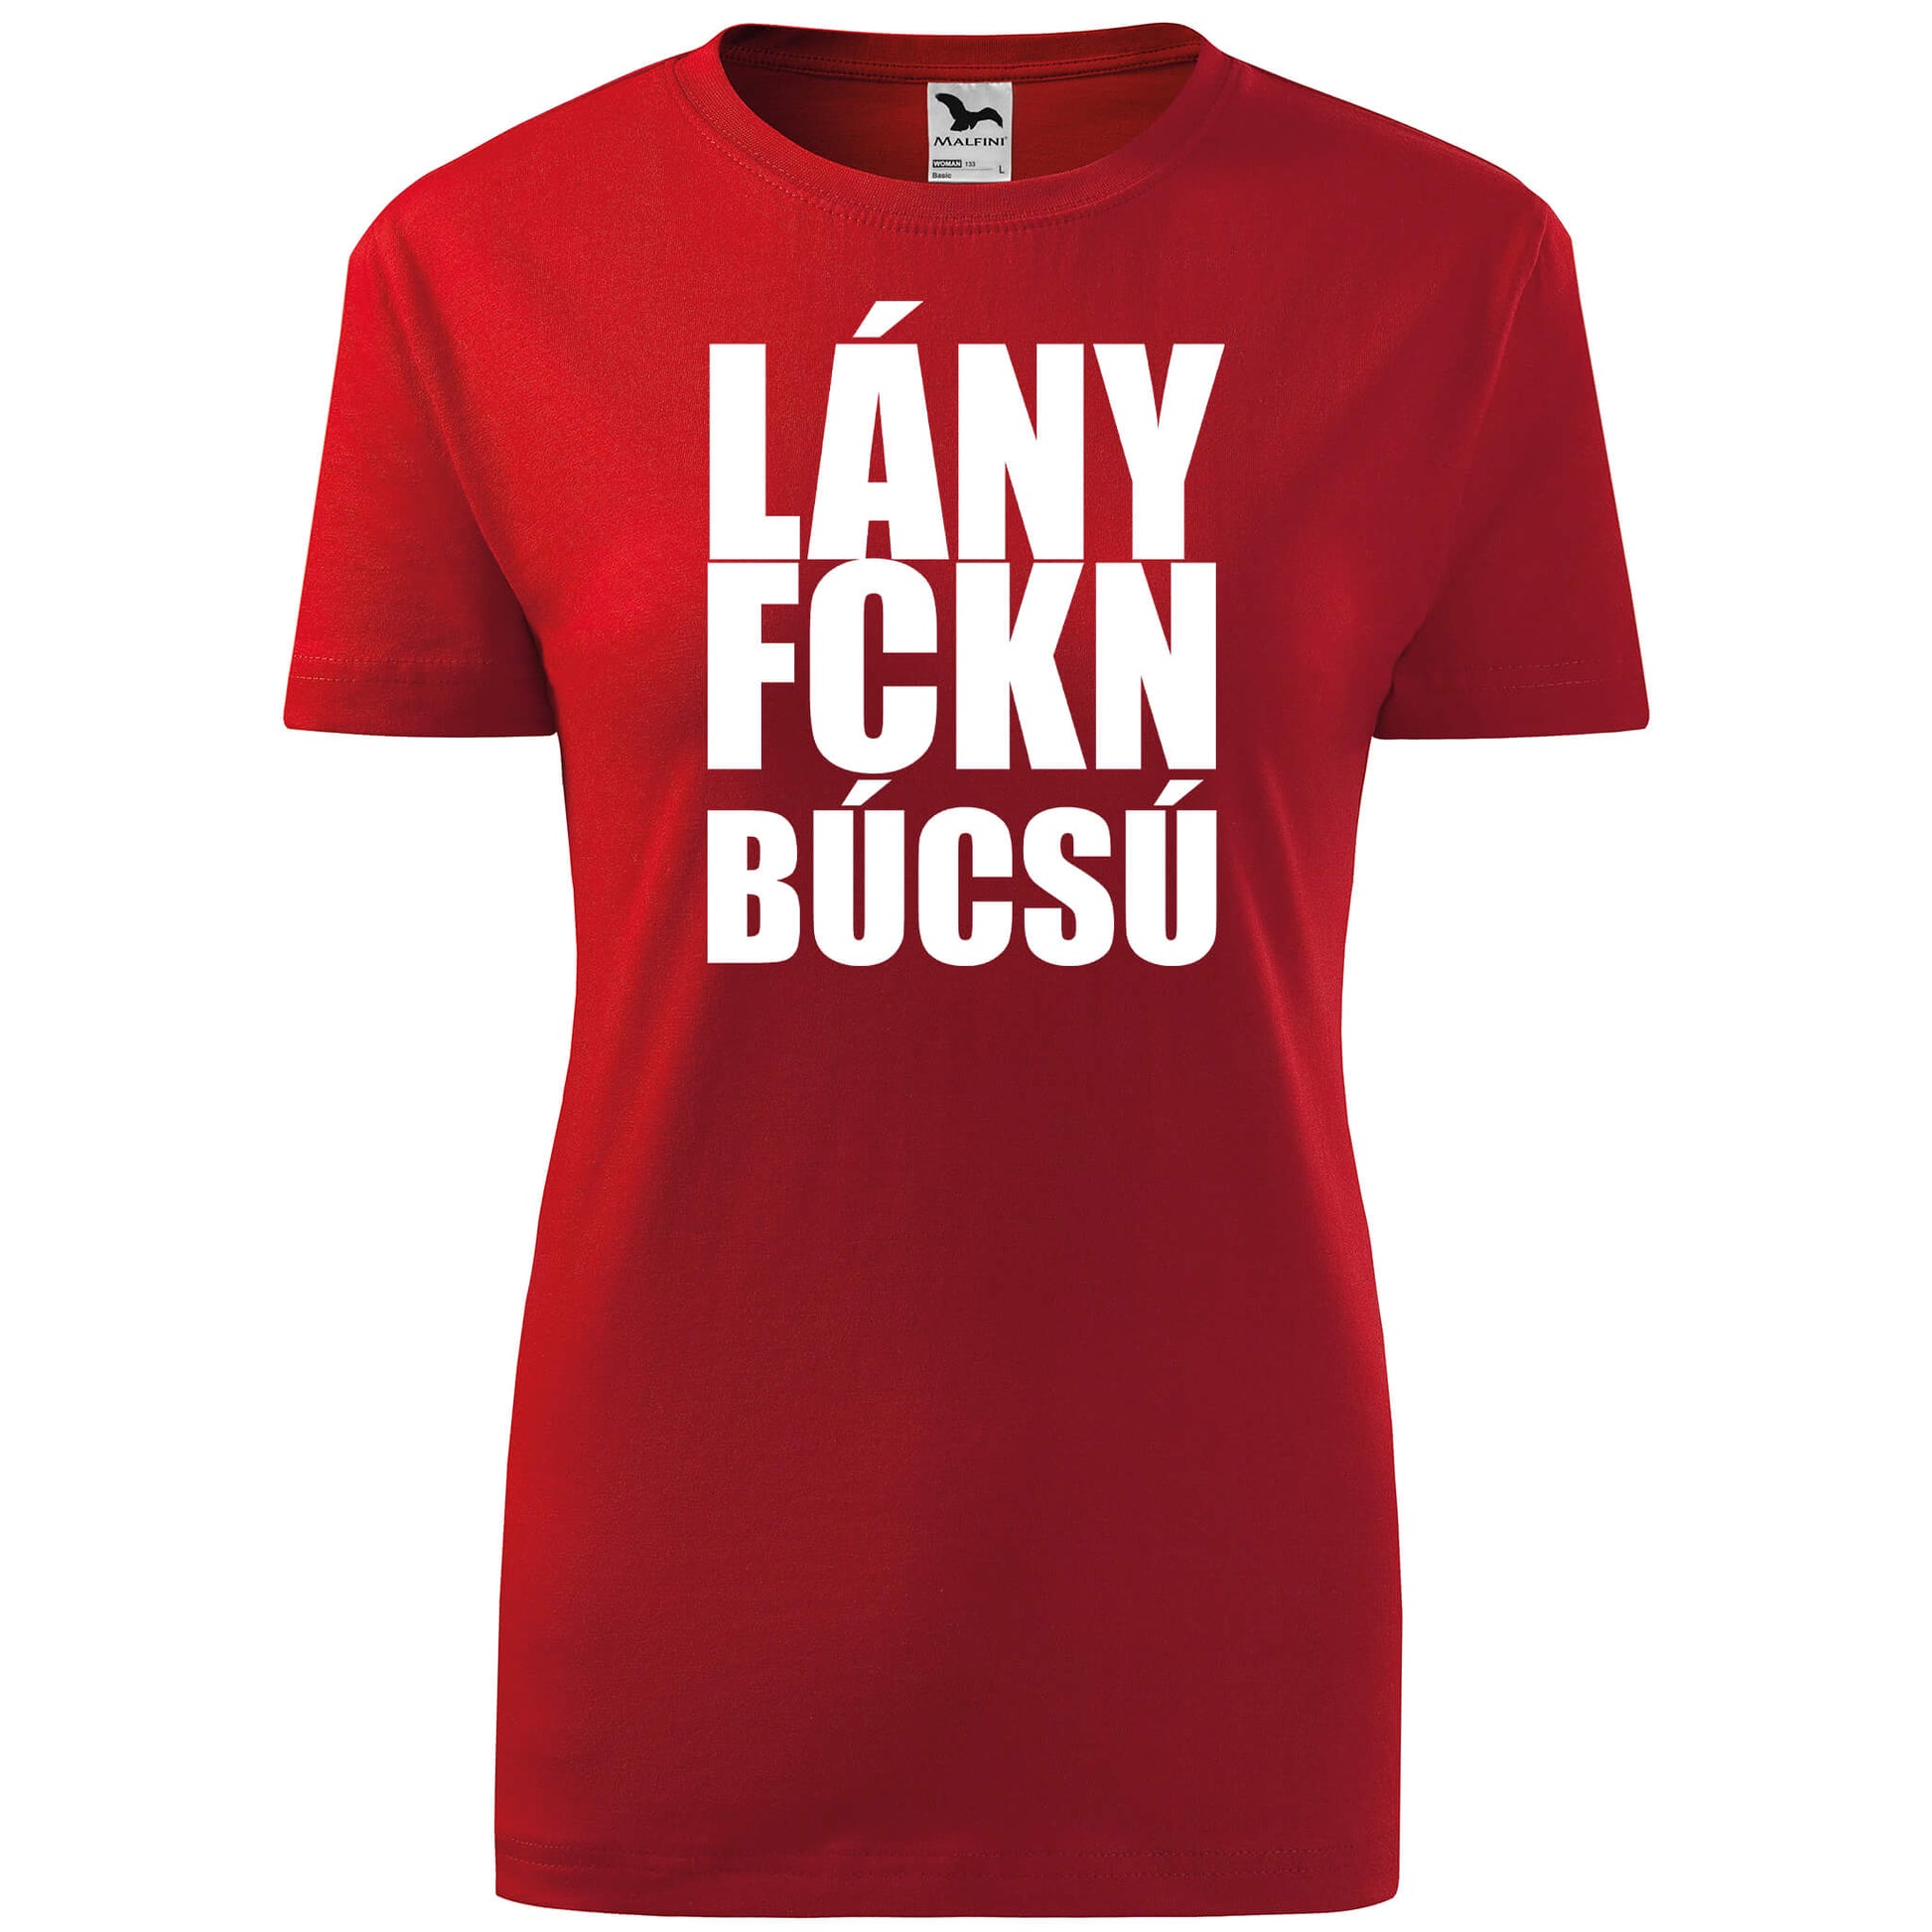 T-shirt - LányFCKNbúcsú - rvdesignprint